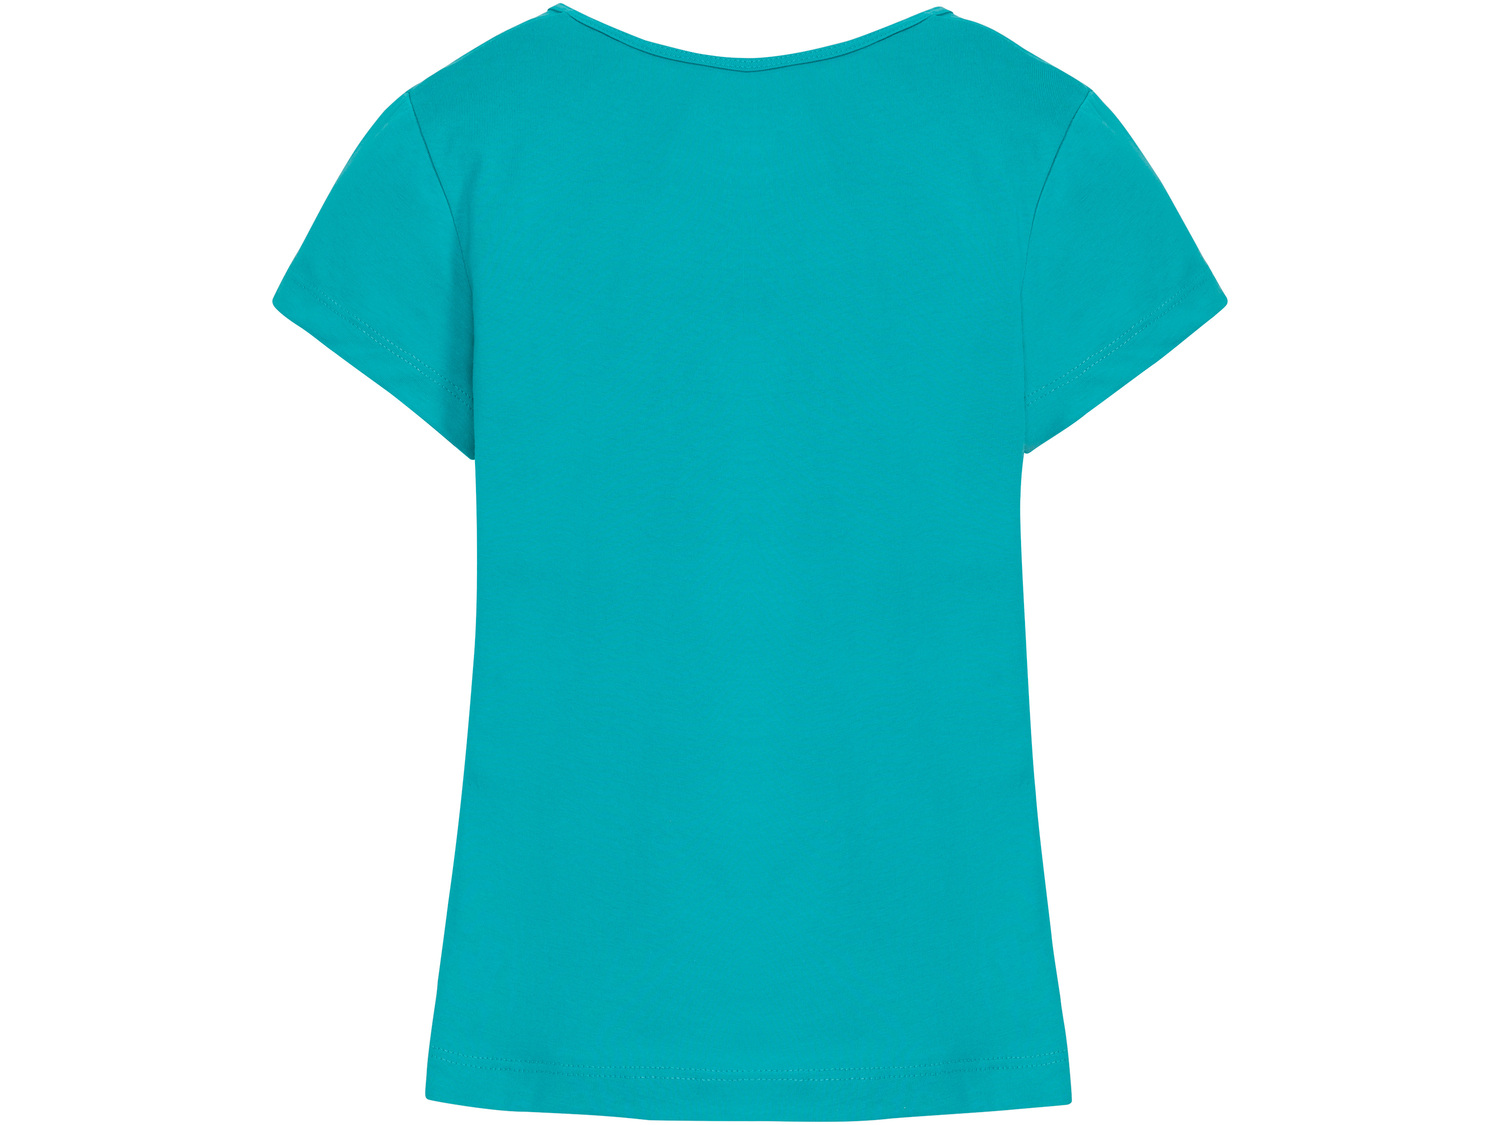 T-shirt dziewczęcy Pepperts, cena 9,99 PLN 
- rozmiary: 122-152
- 100% bawełny
Dostępne ...